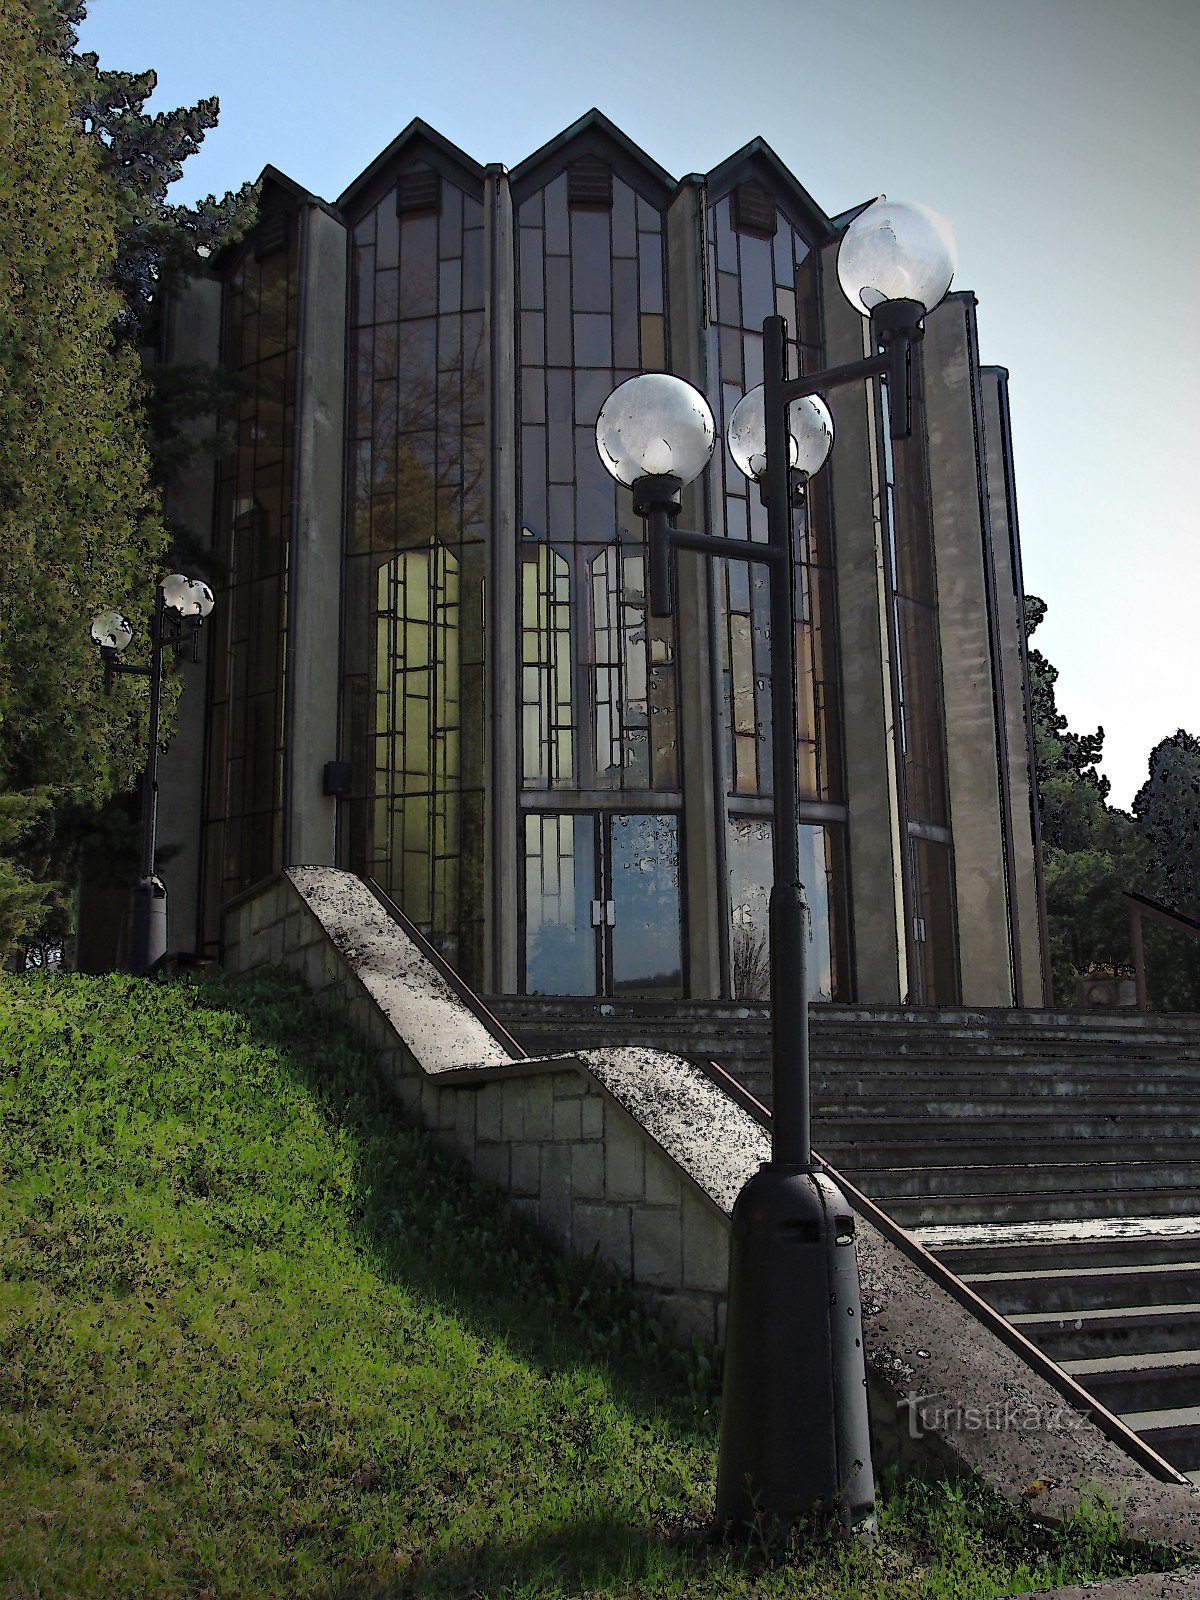 Seremoniallinen hautaussali Brumovissa - Bylnicessä